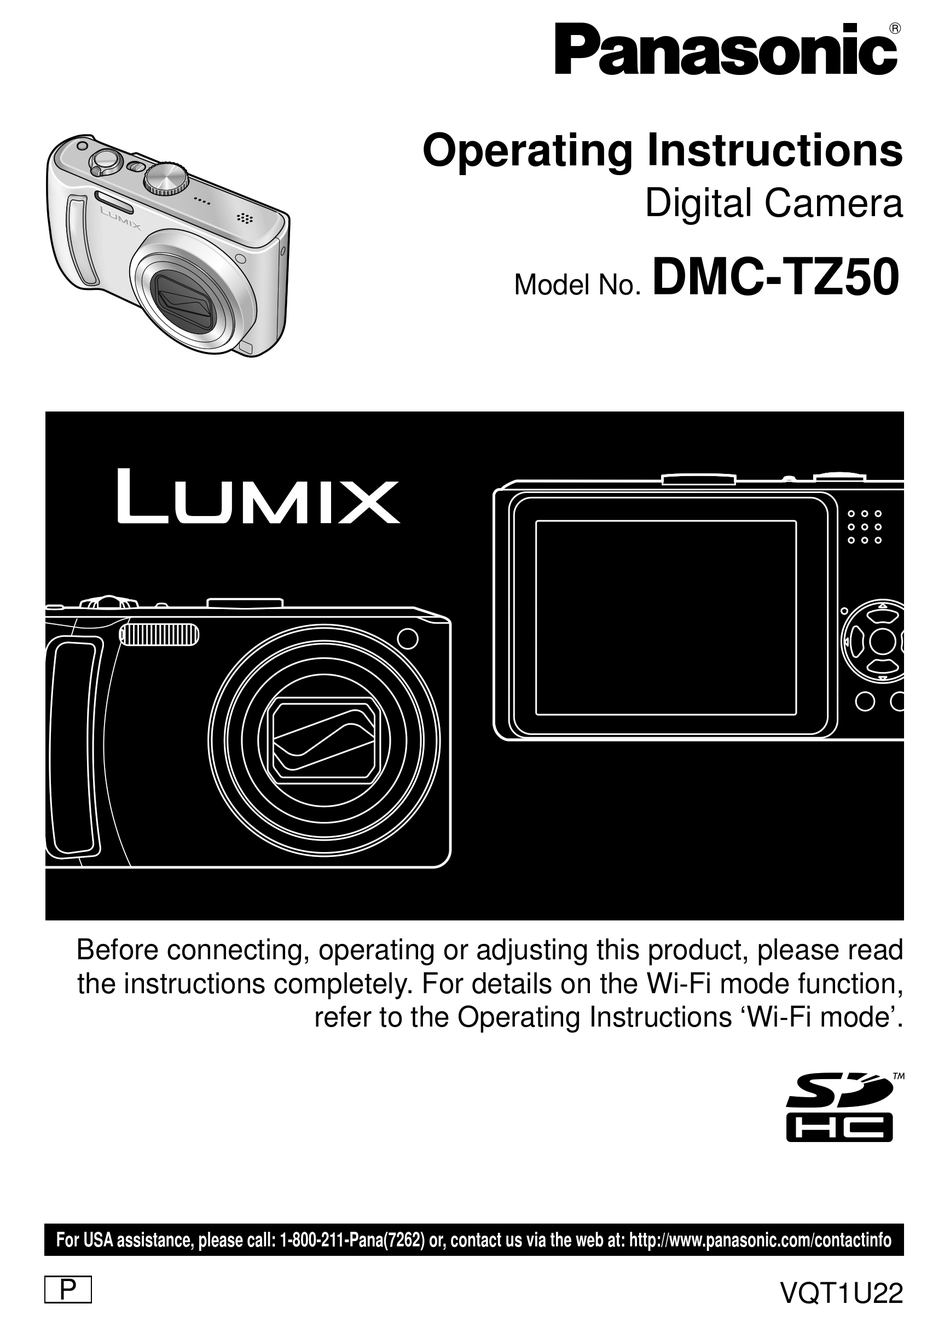 LUMIX DMC-TZ50 OPERATING INSTRUCTIONS MANUAL Pdf Download ManualsLib